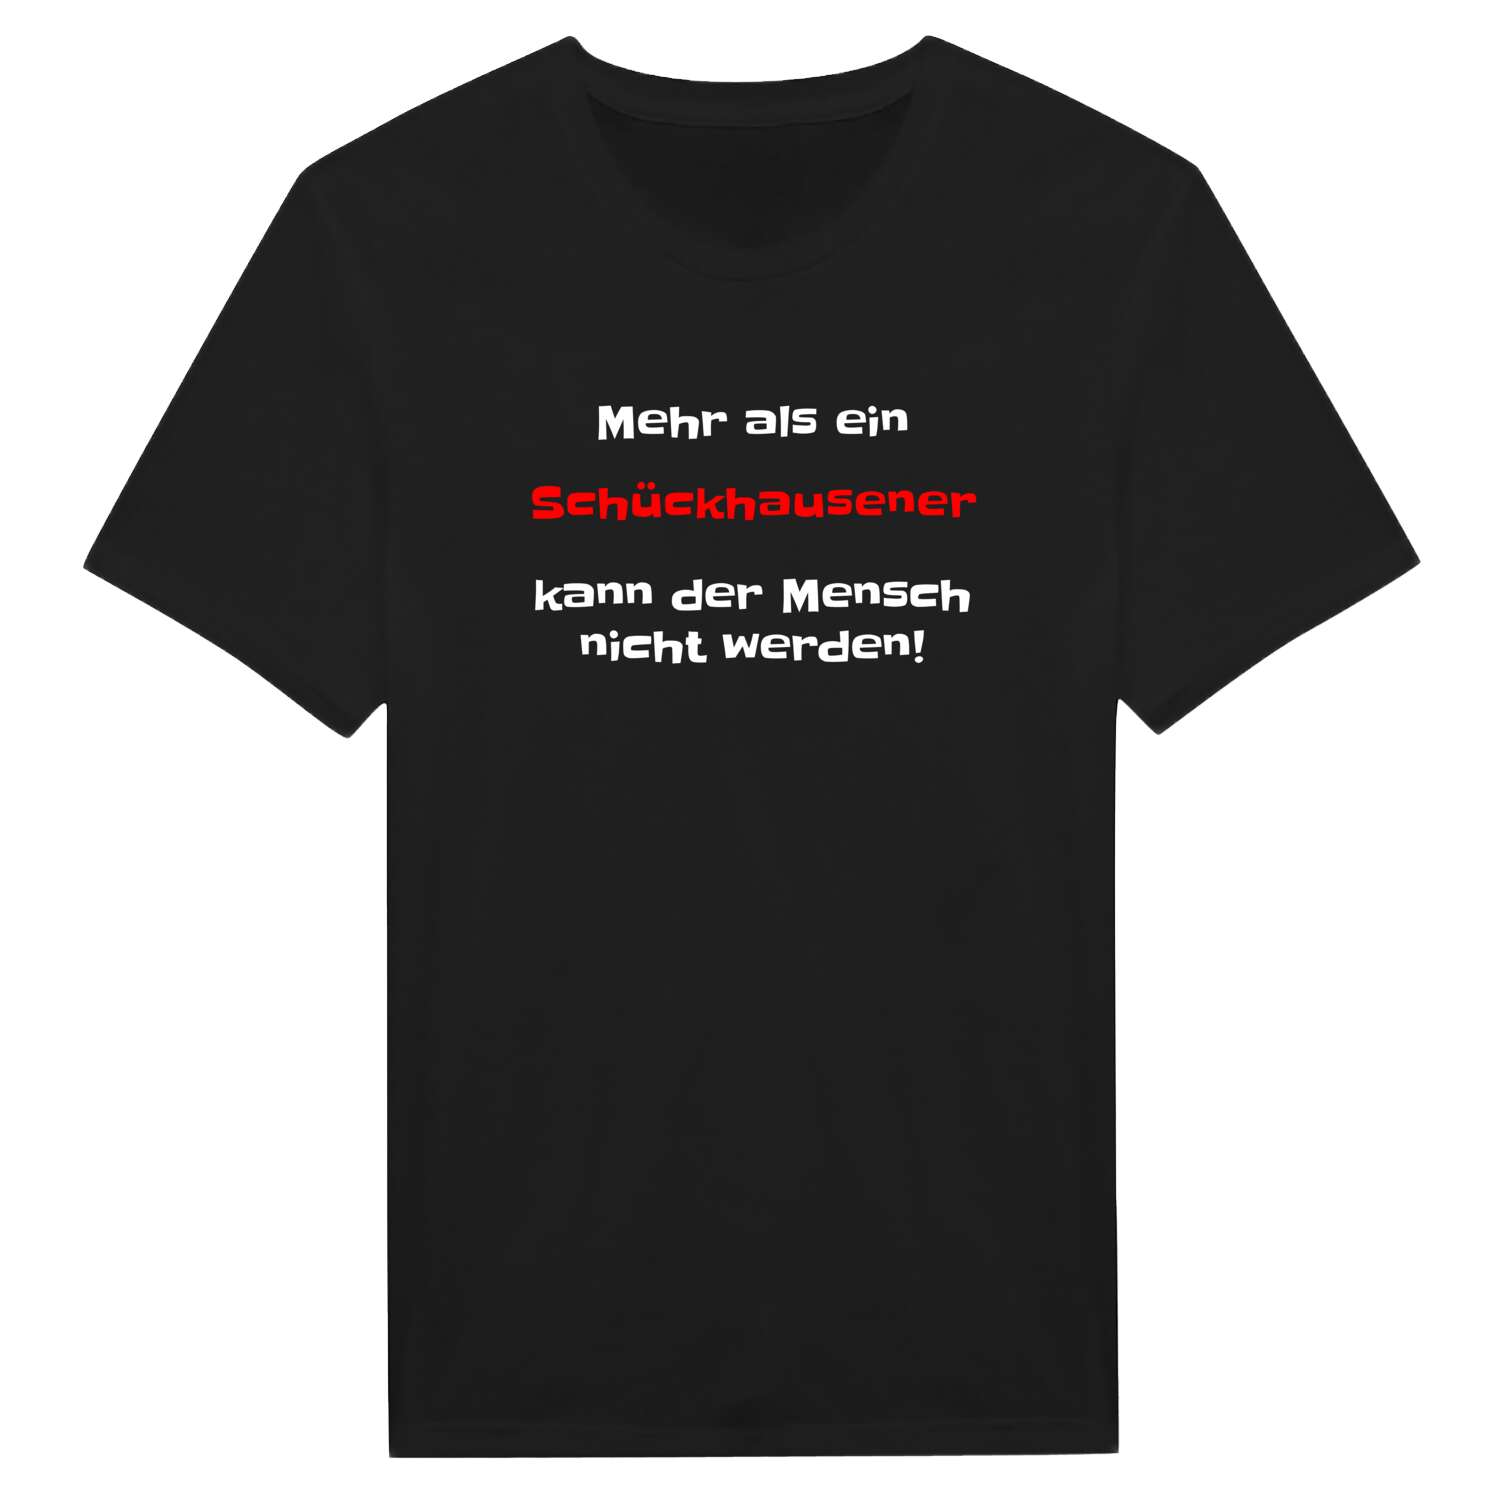 Schückhausen T-Shirt »Mehr als ein«